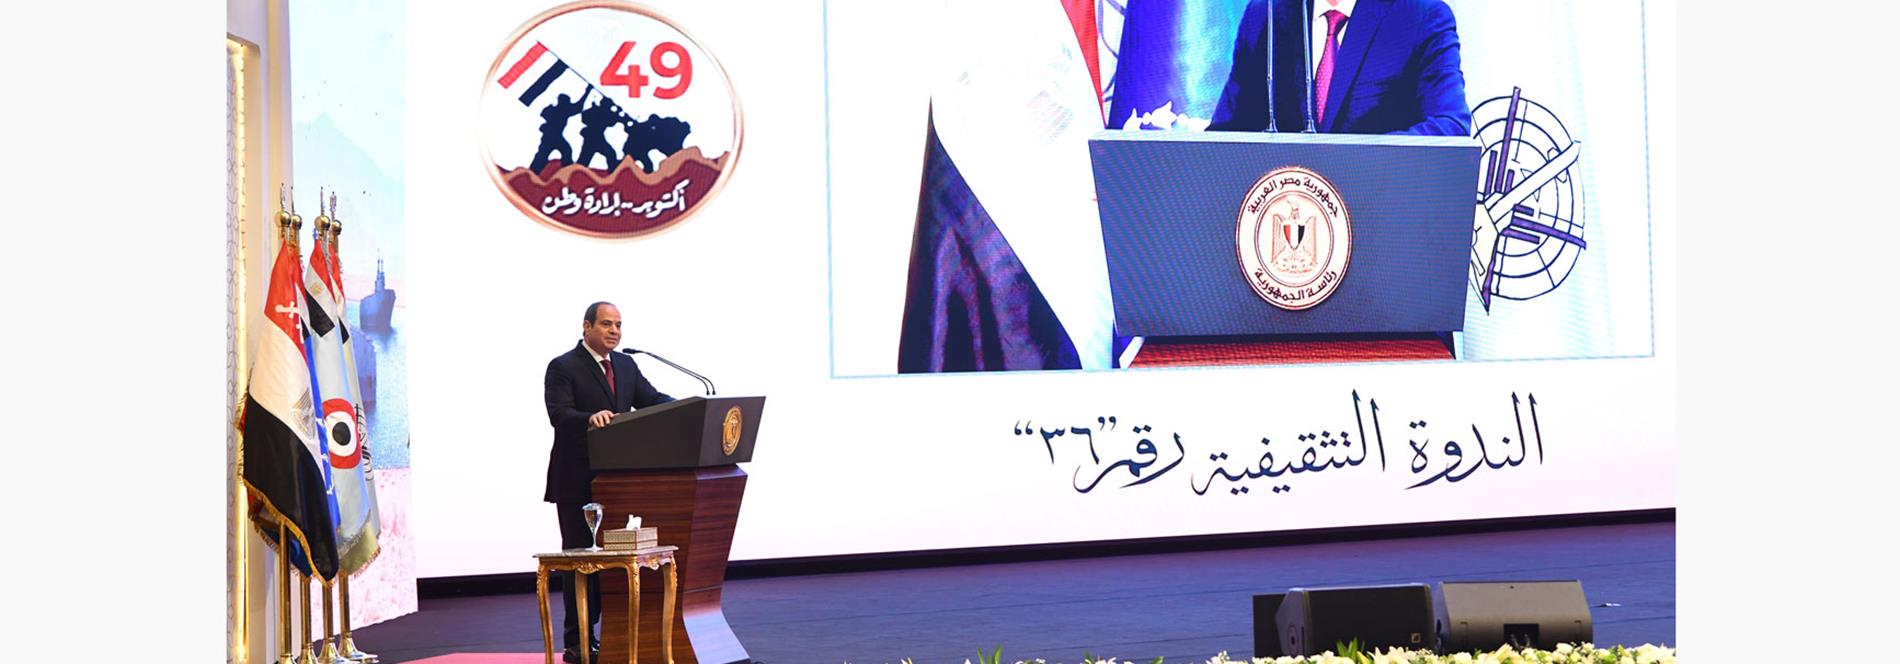 كلمة الرئيس عبد الفتاح السيسي في الندوة التثقيفية بمناسبة الذكرى الـ 49 لنصر حرب أكتوبر المجيدة 4/10/2022